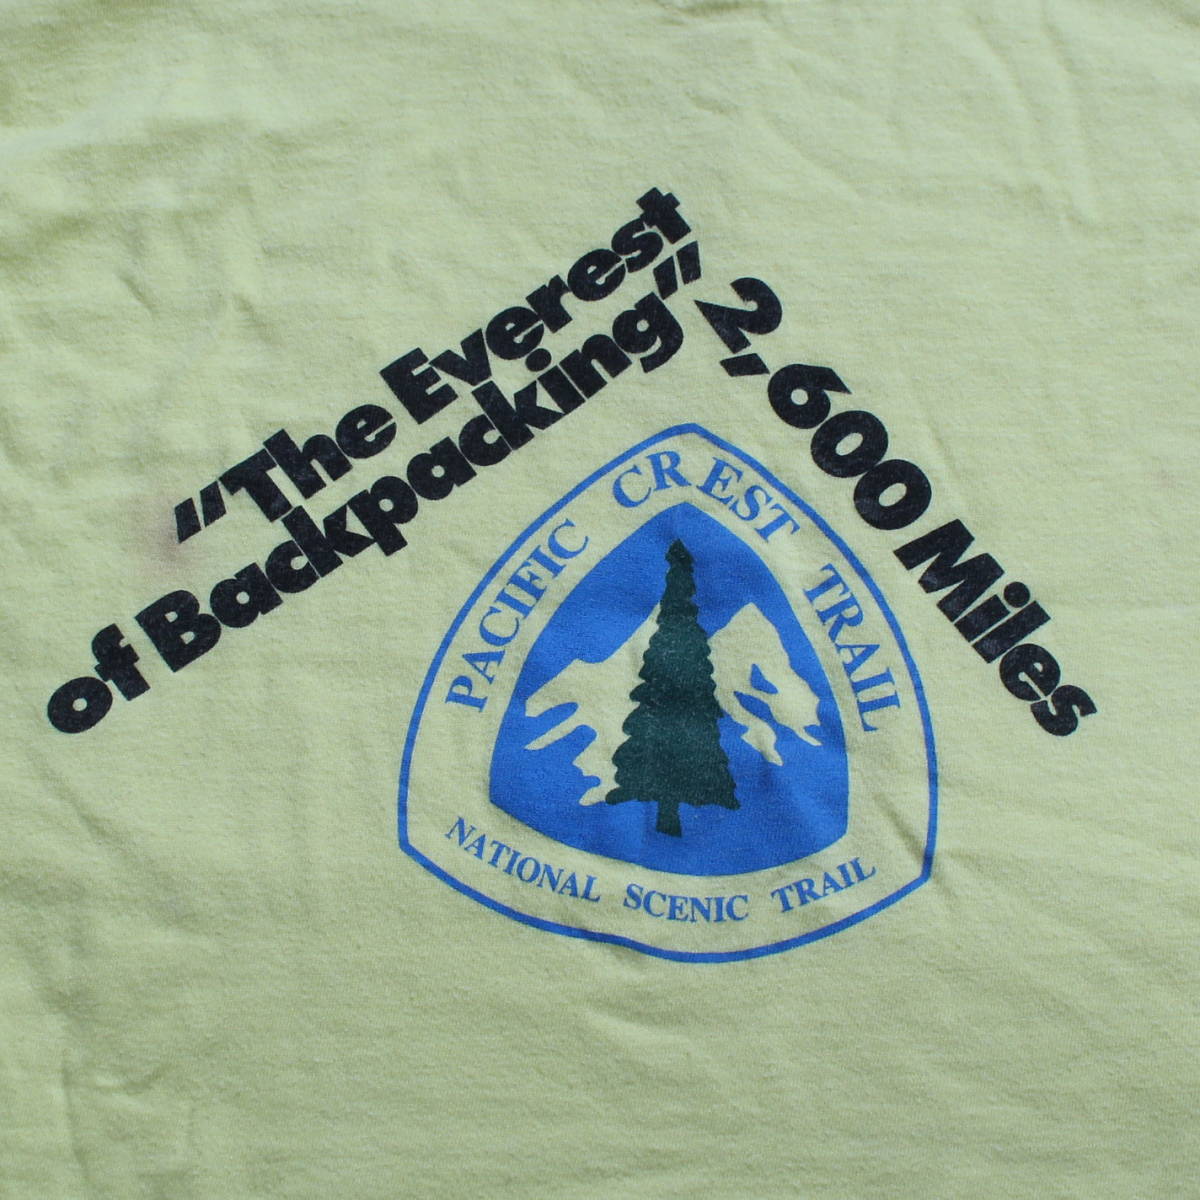 レア1980-90s Pacific Crest TrailヴィンテージTシャツ アメリカUSAトレイル マウンテン ULハイキング アウトドア 古着ギア ジョンミューア_画像4